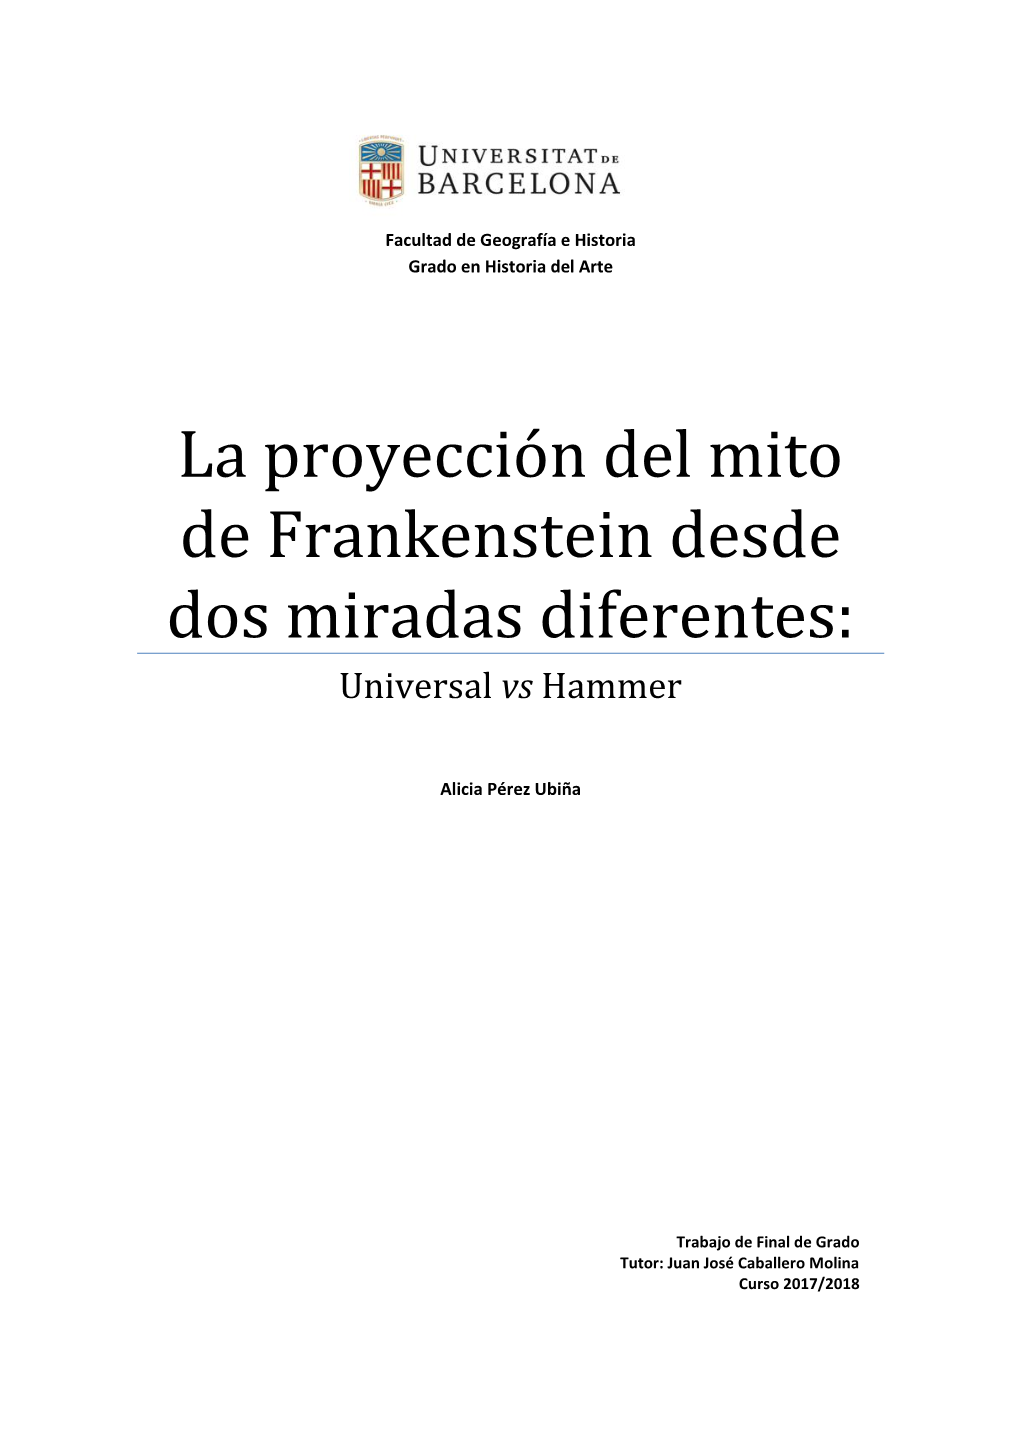 La Proyección Del Mito De Frankenstein Desde Dos Miradas Diferentes: Universal Vs Hammer